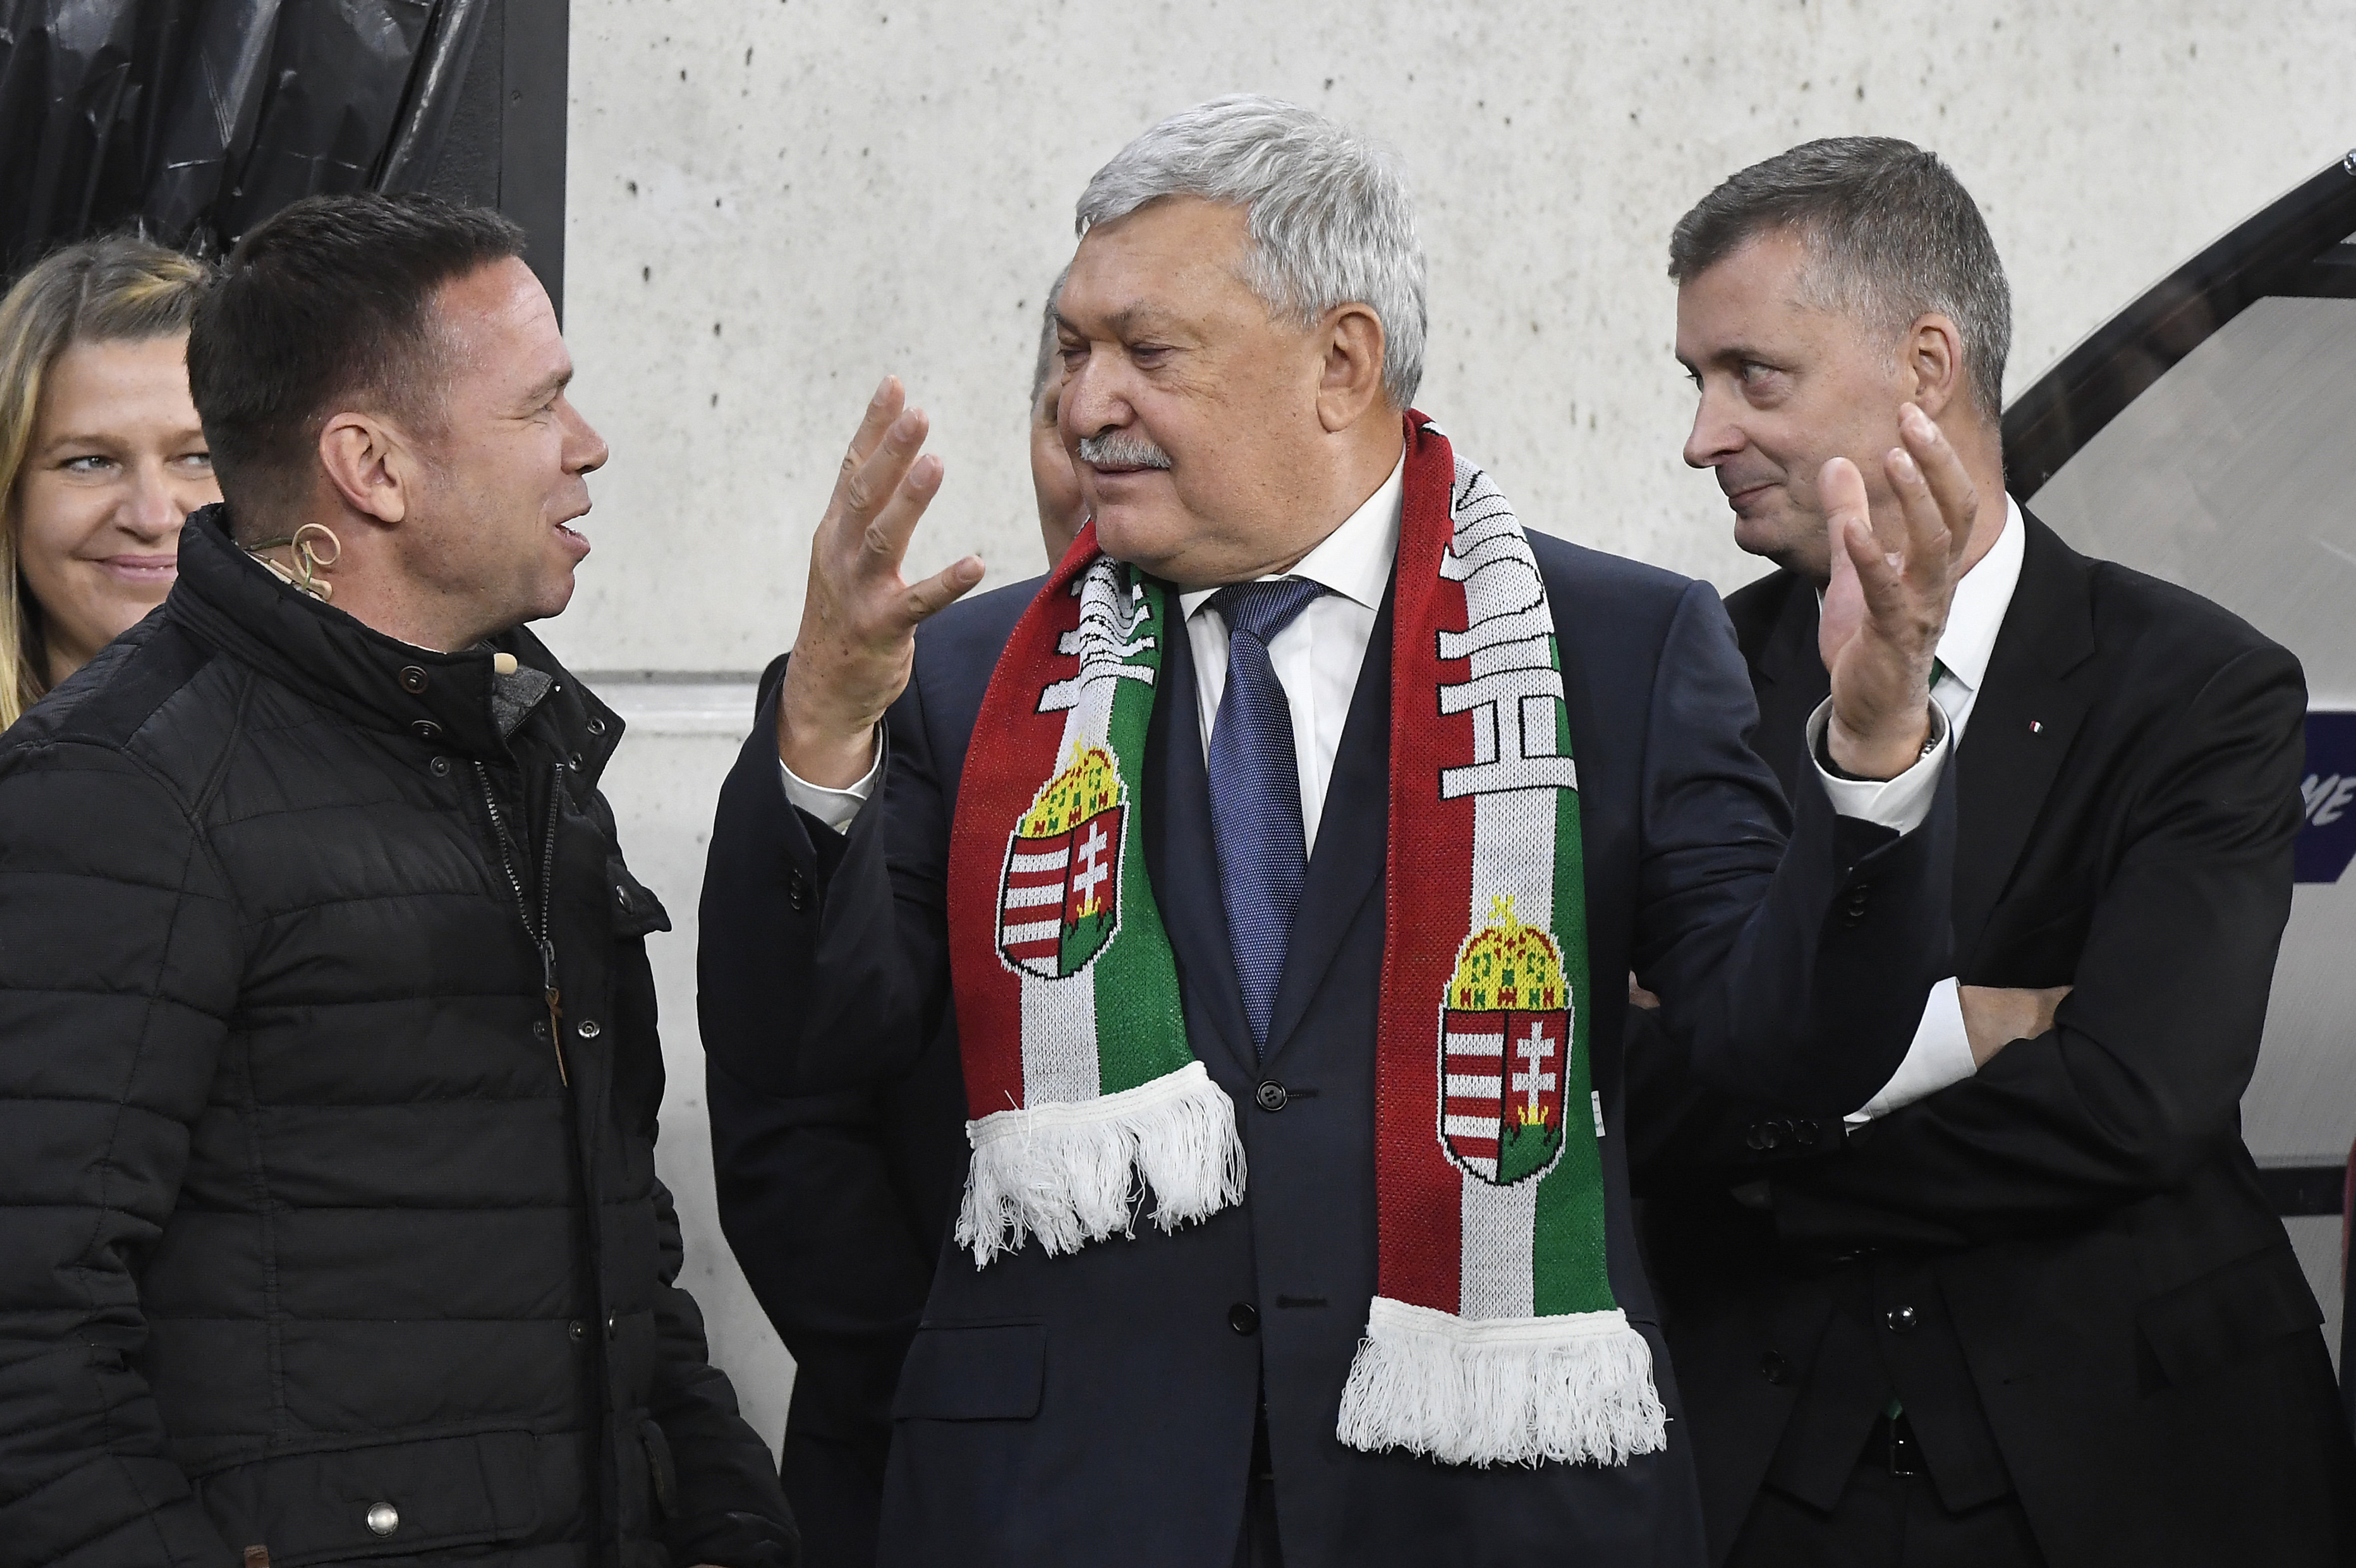 Csányi Sándor, a Magyar Labdarúgó Szövetség elnöke (középen) és Kubatov Gábor (jobbra) a Puskás Aréna nyitóünnepségén 2019. november 15-én.